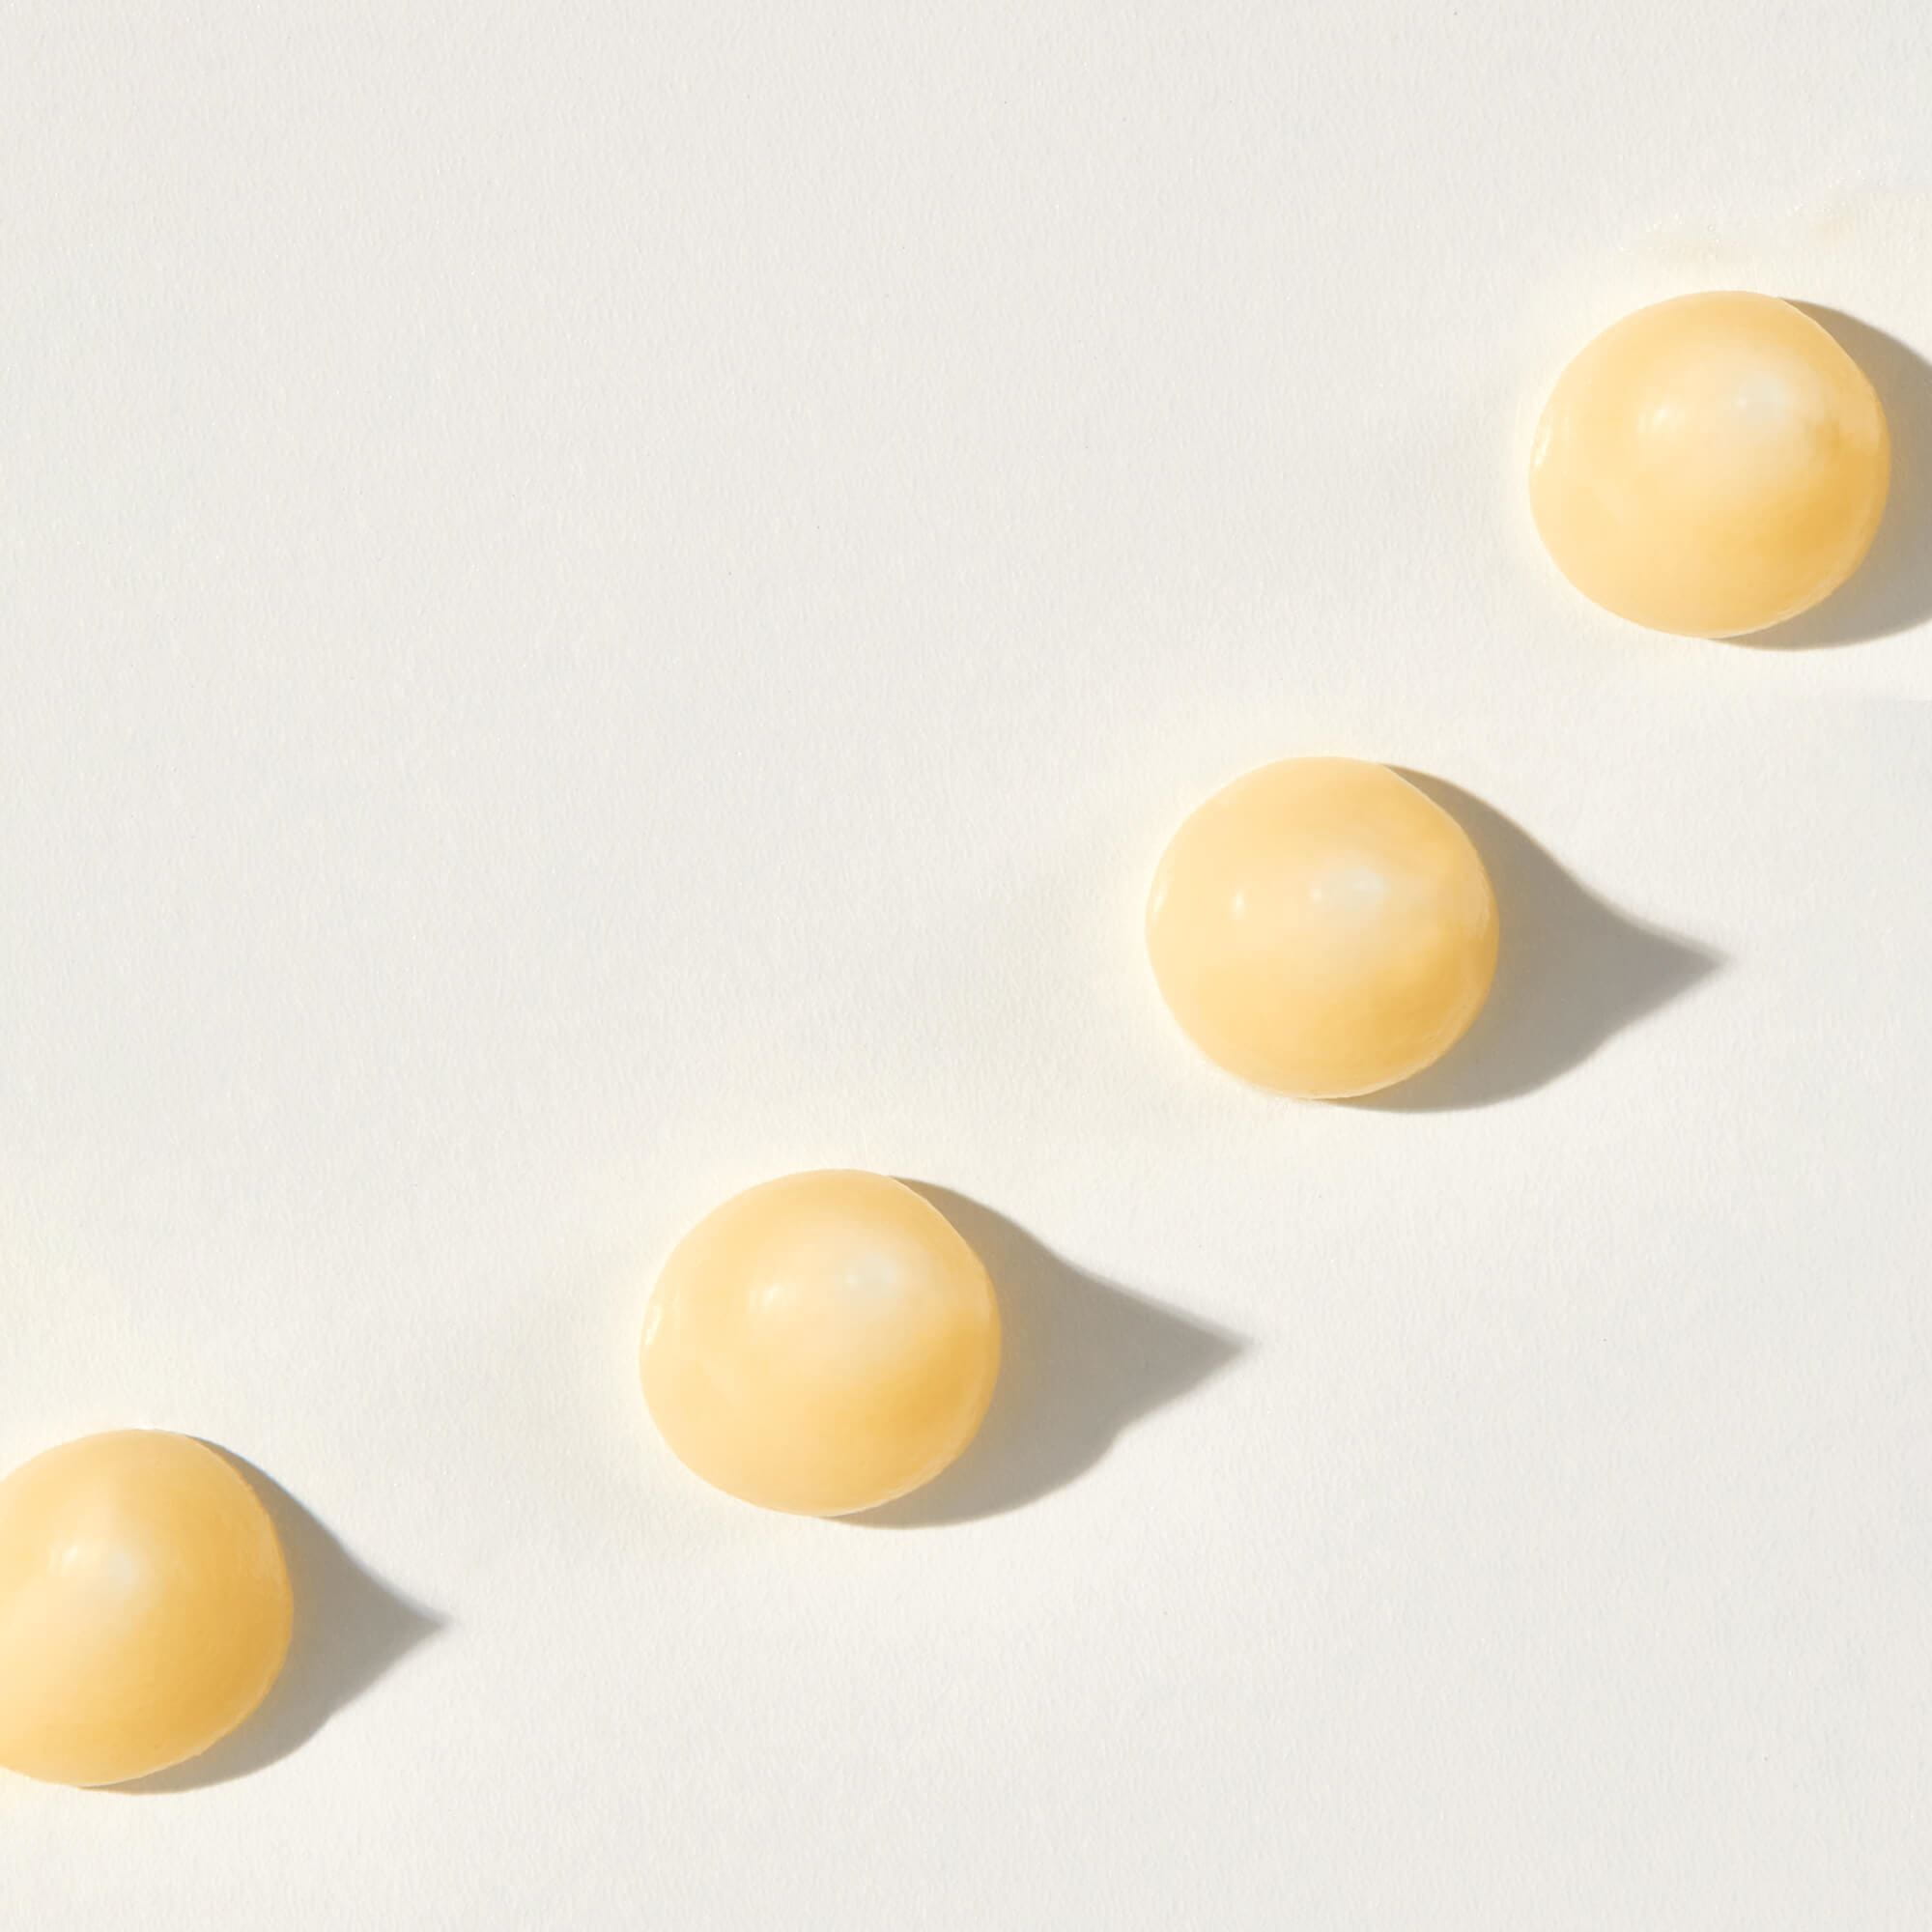 Une vue rapprochée de peptides de couleur jaune sur un fond blanc.